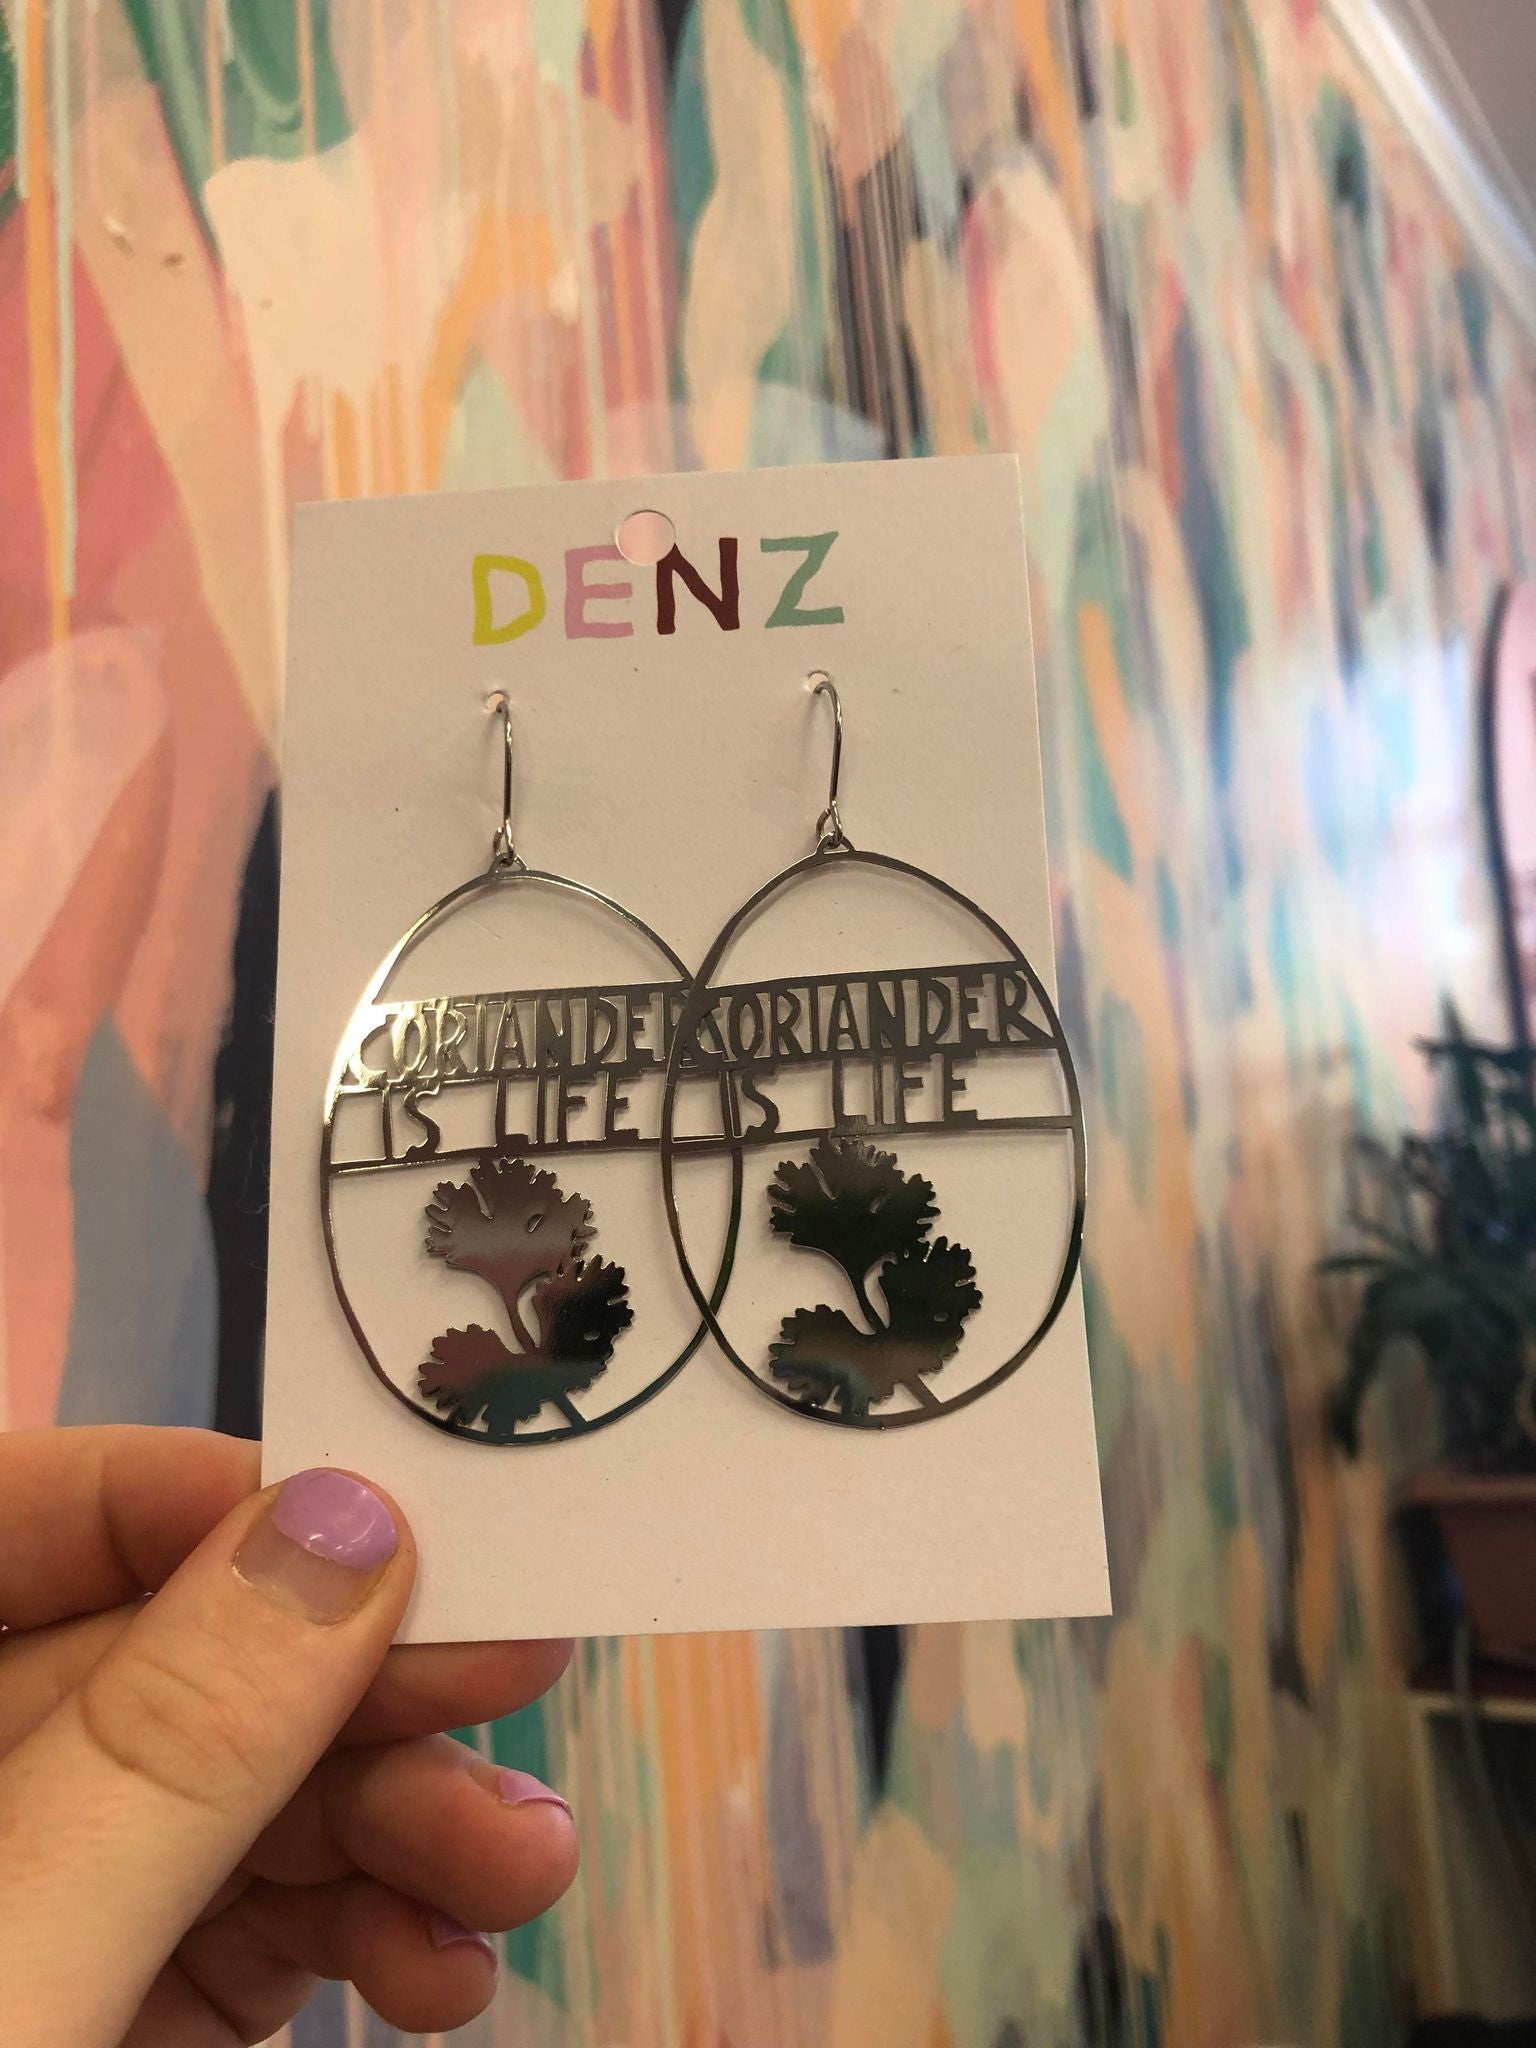 Denz coriander is life silver